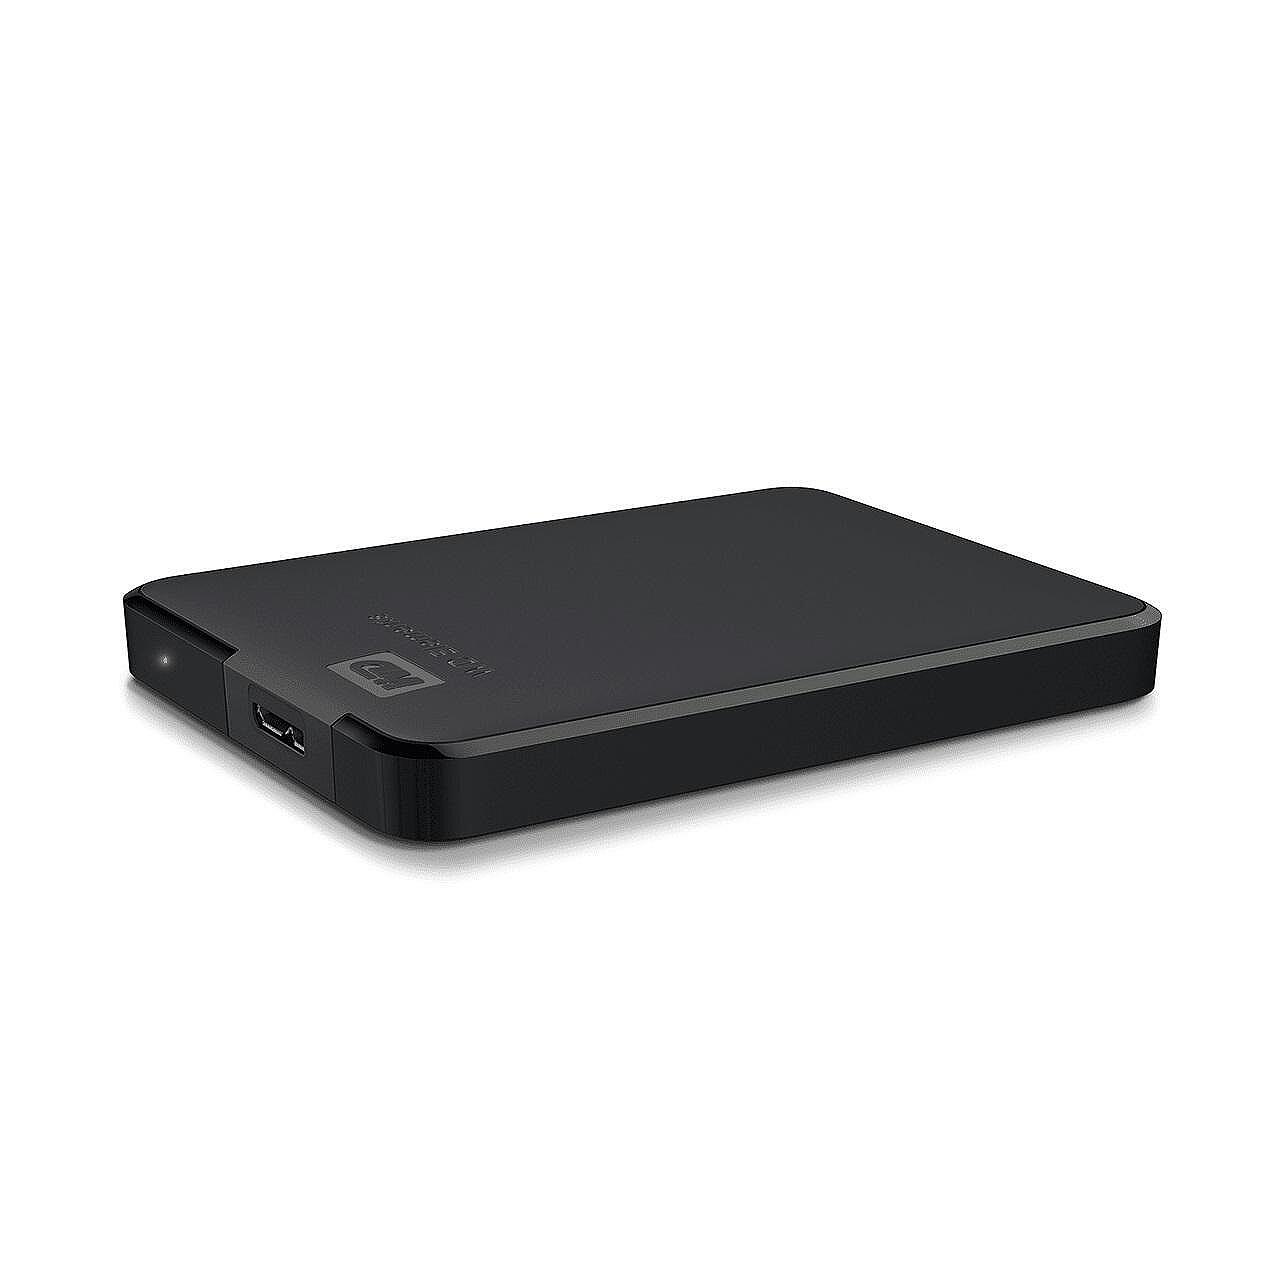 Външен хард диск Western Digital Elements Portable, 1TB, 2.5", USB 3.0, Черен Изображение